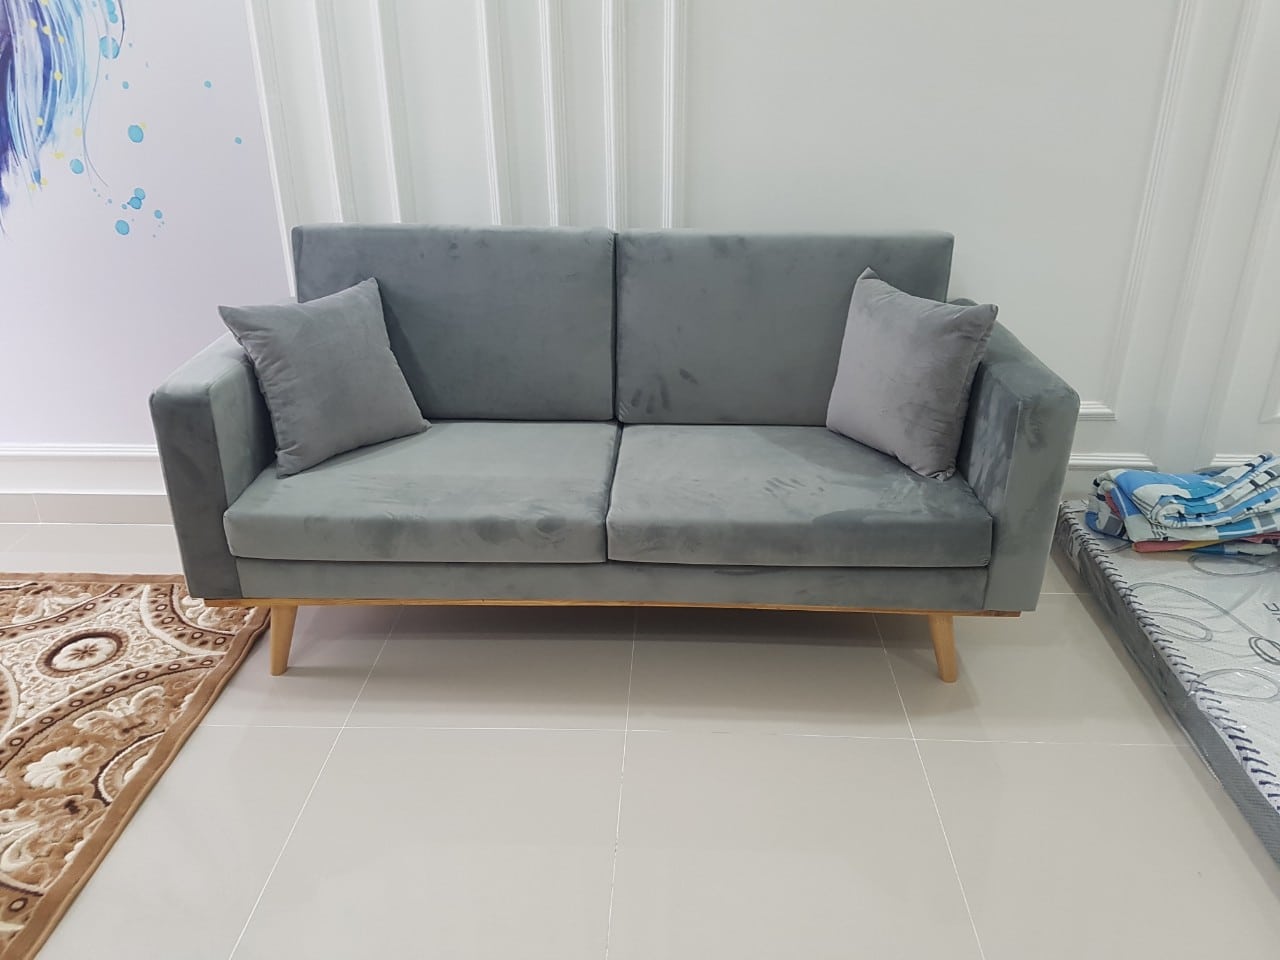 Ghế sofa tại Long Xuyên- Hình ảnh bàn giao cho khách hàng